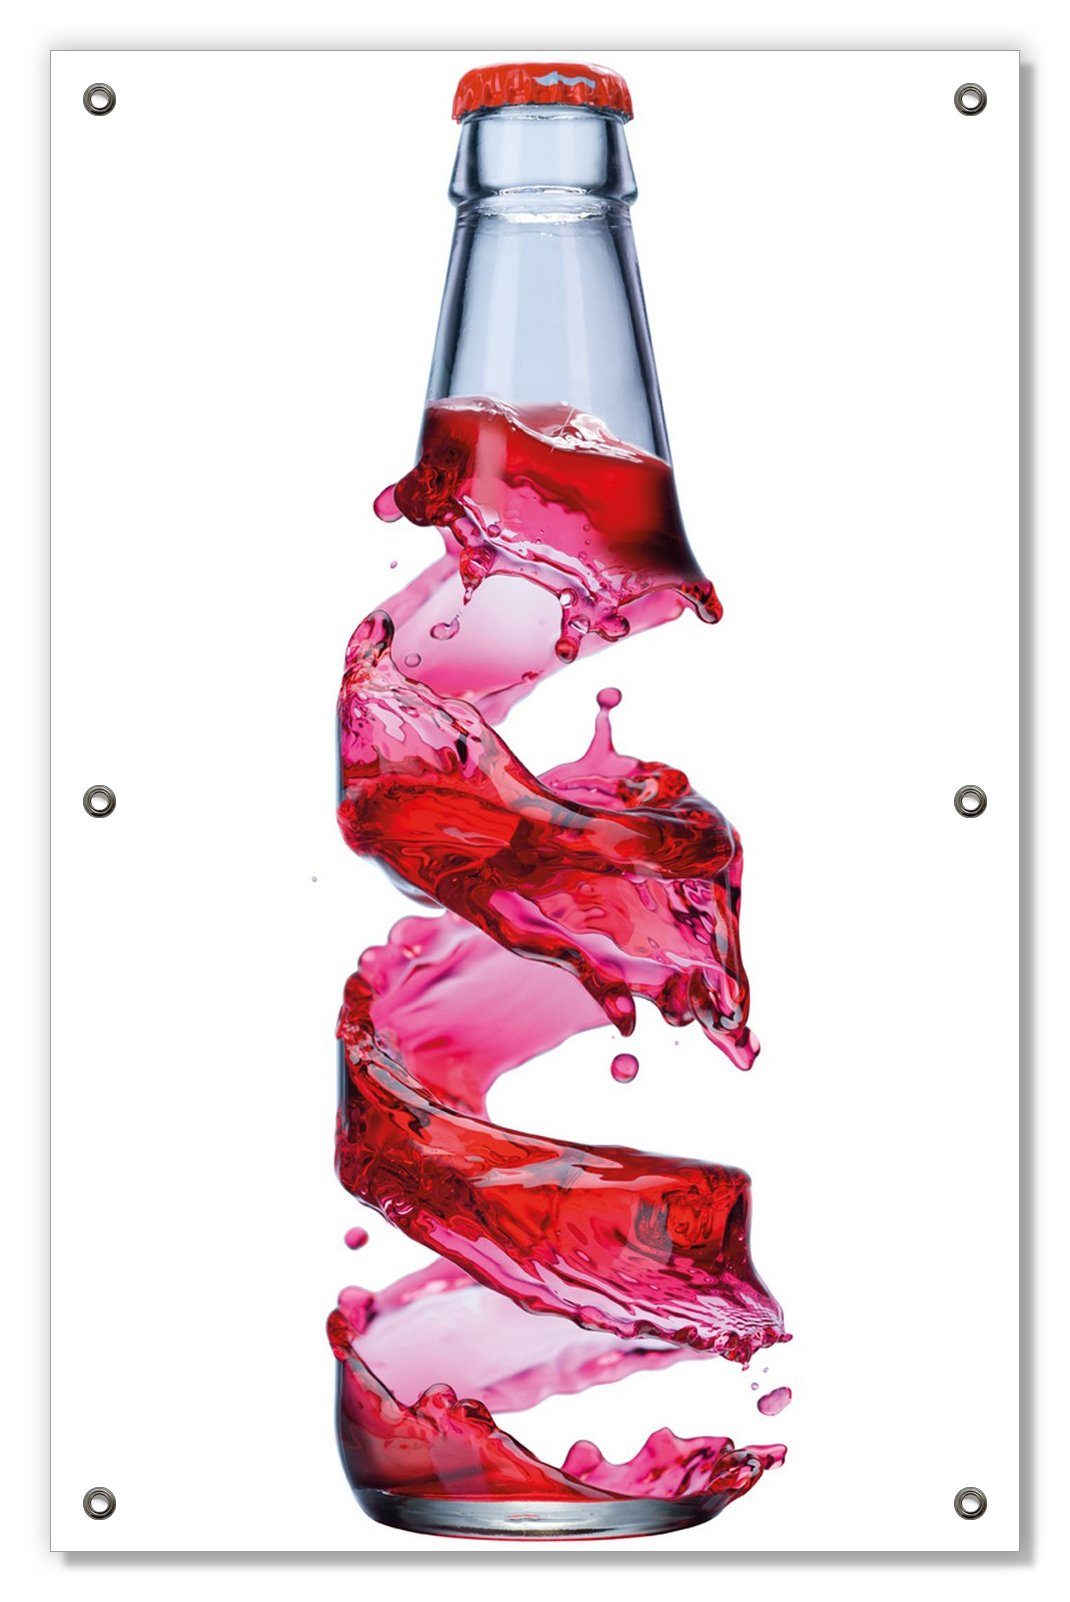 Sonnenschutz Flasche mit roter Brause - Wirbelsturm, Wallario, blickdicht, mit Saugnäpfen, wiederablösbar und wiederverwendbar